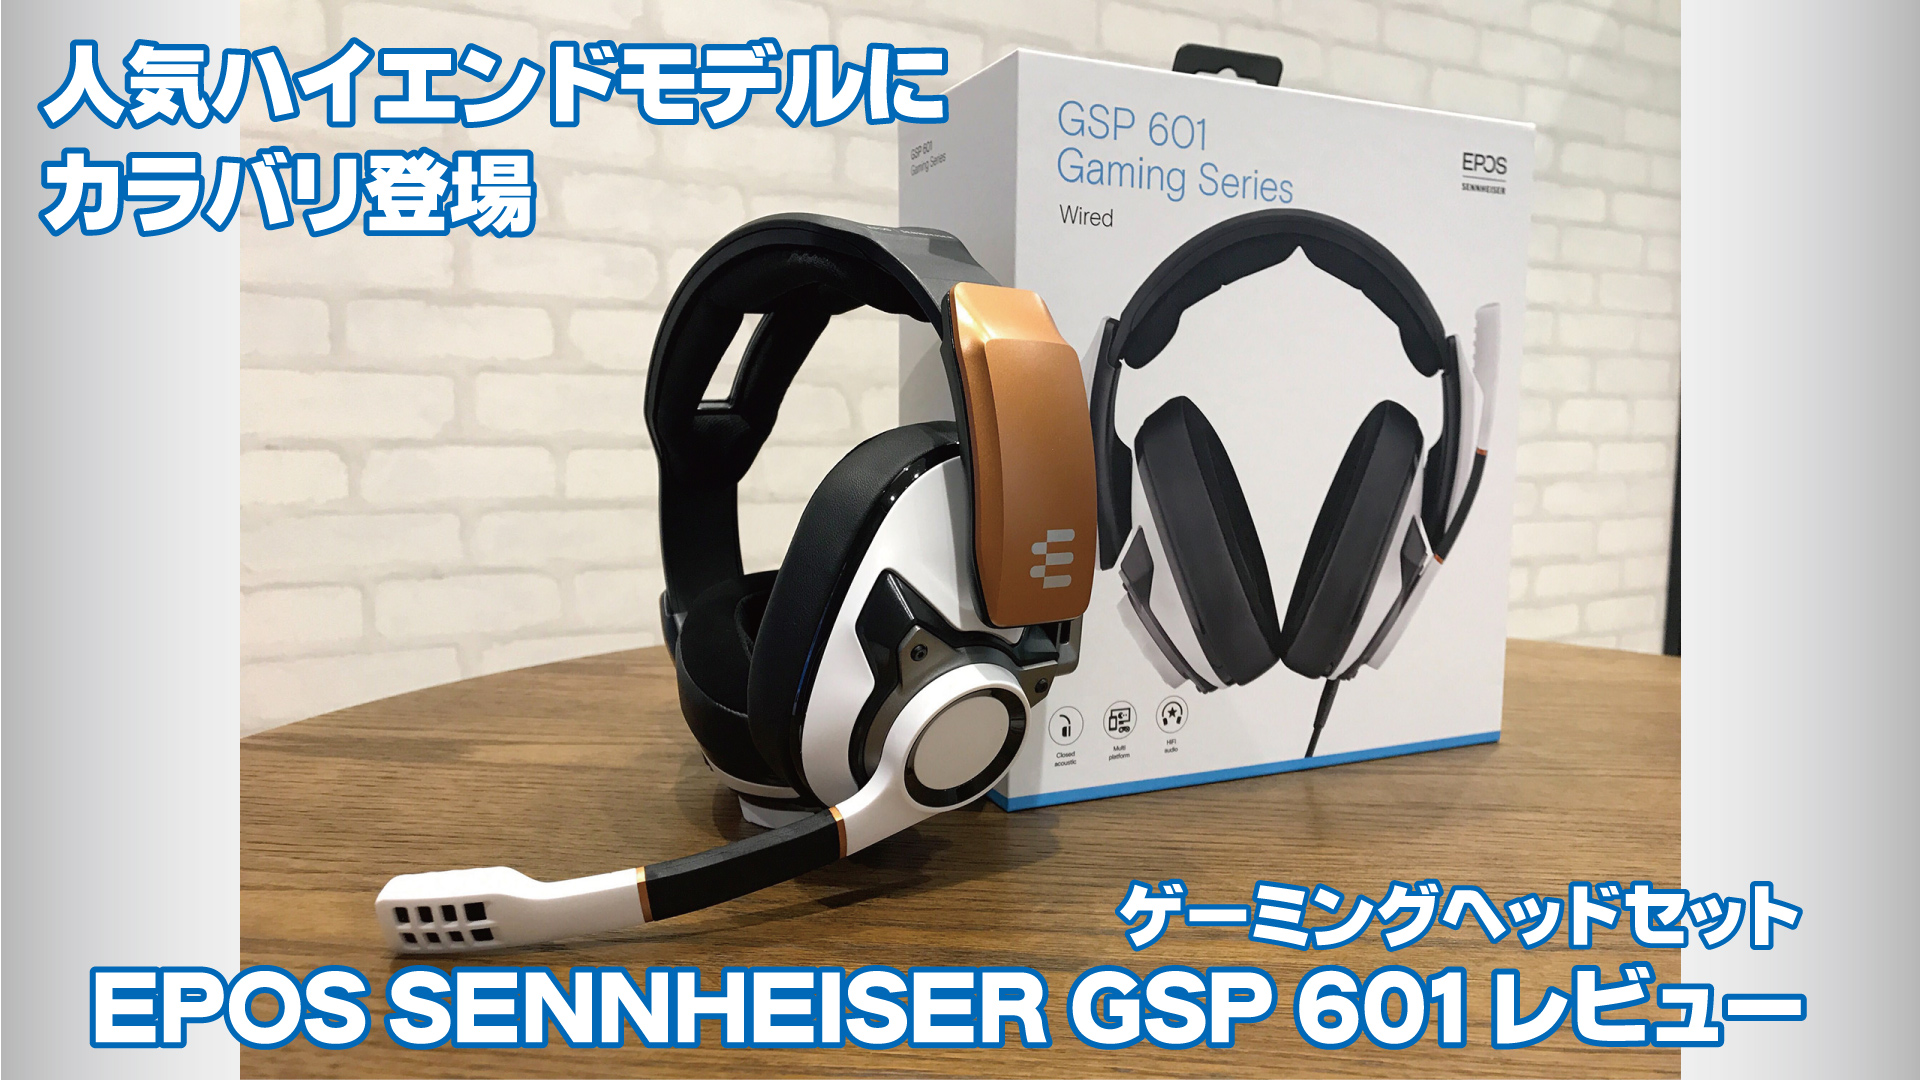 ゲーミング SENNHEISER - ゼンハイザー GSP600 の通販 by T's shop